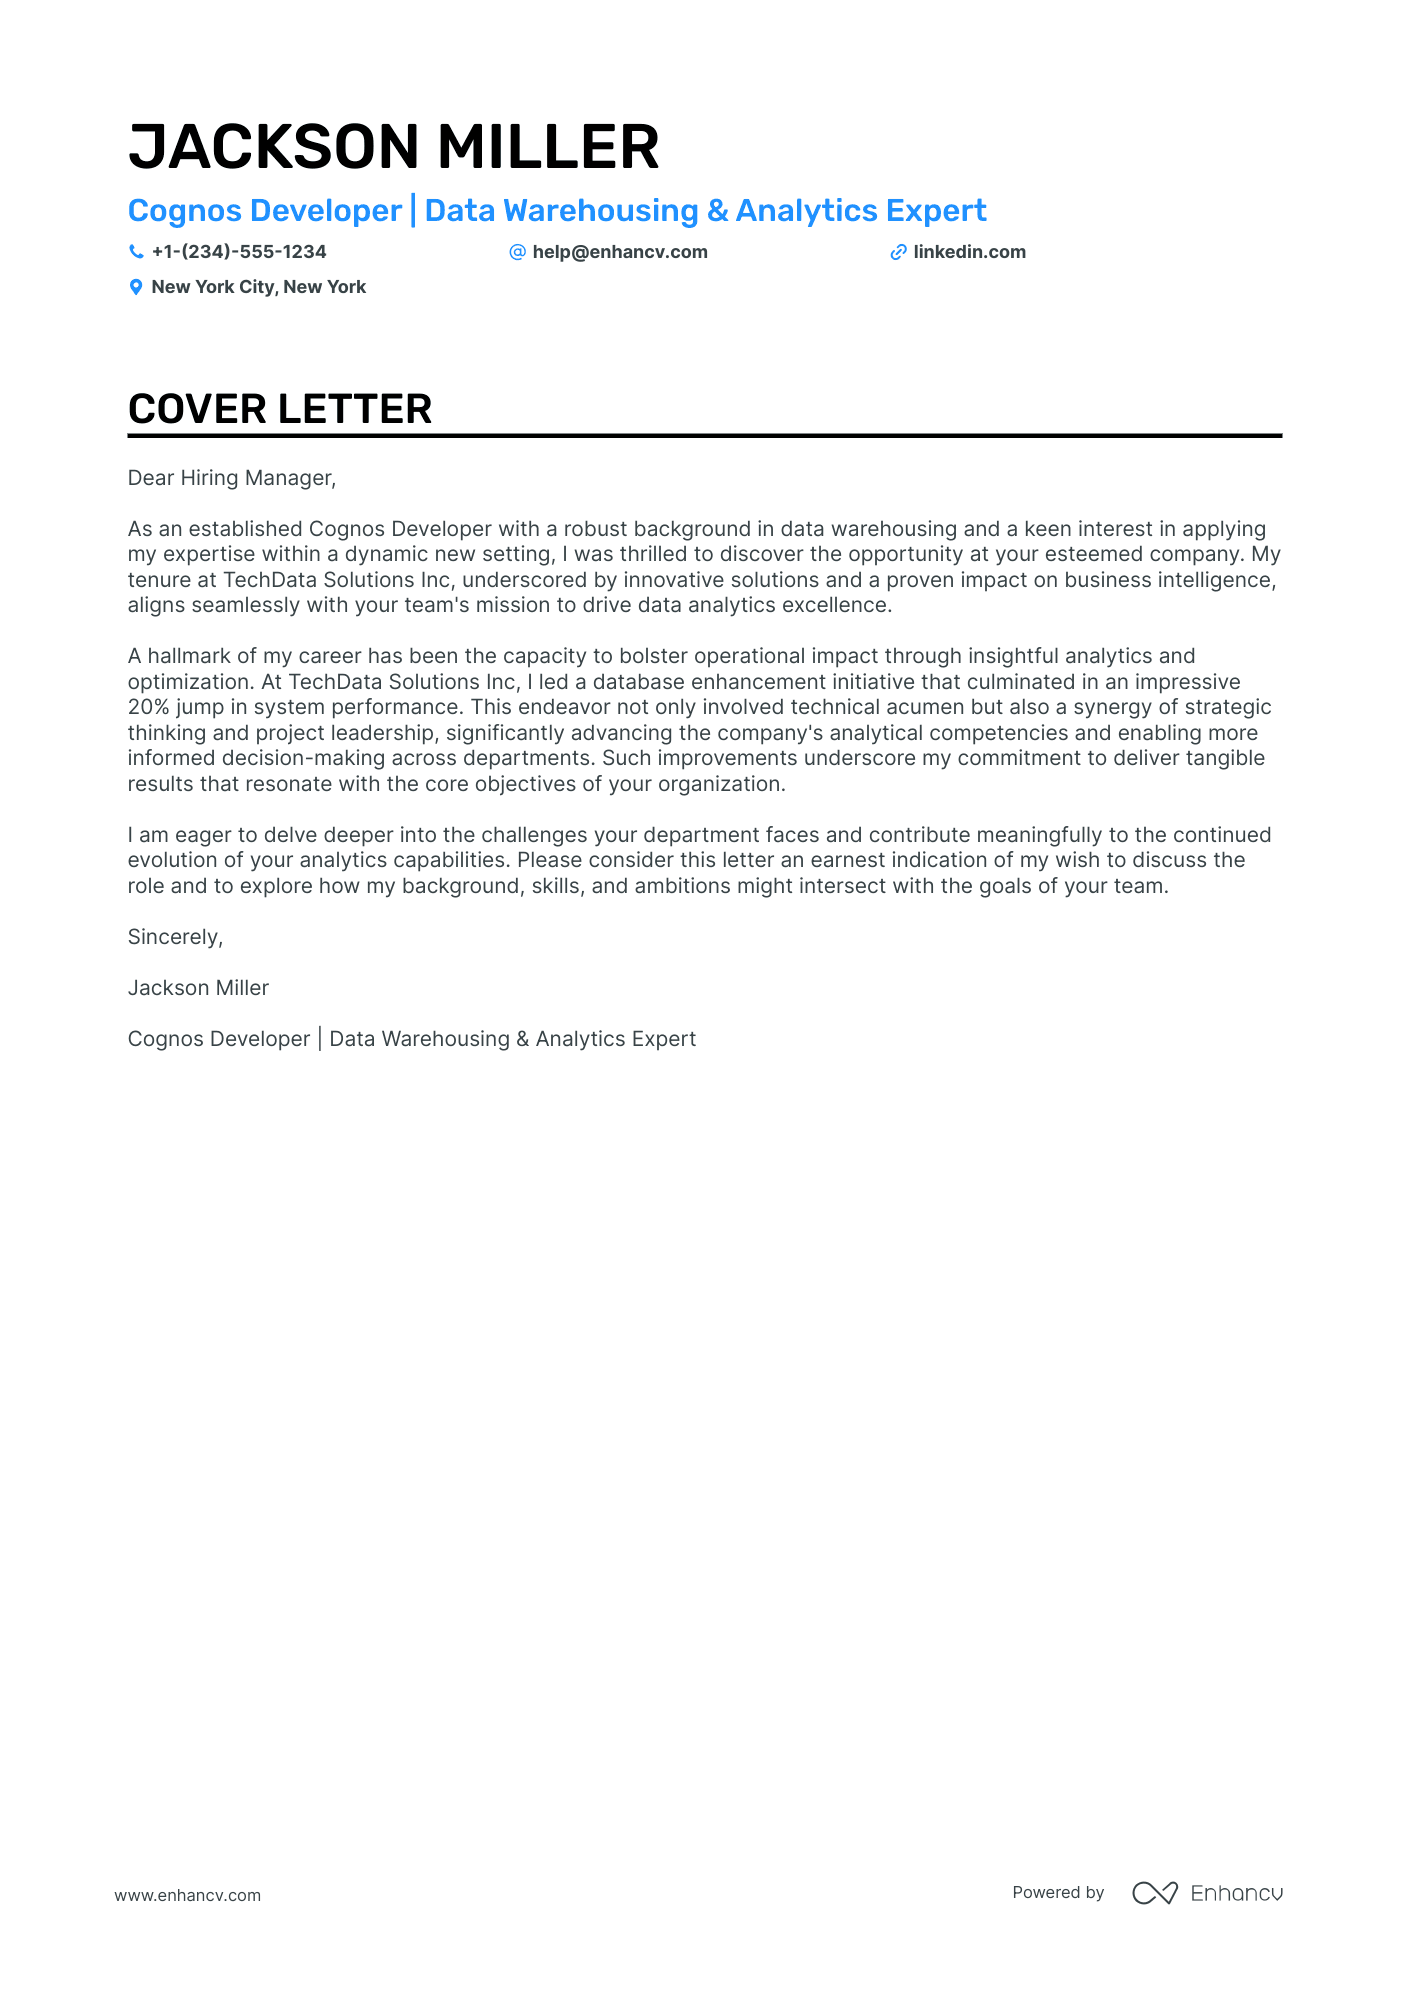 Cognos Developer cover letter